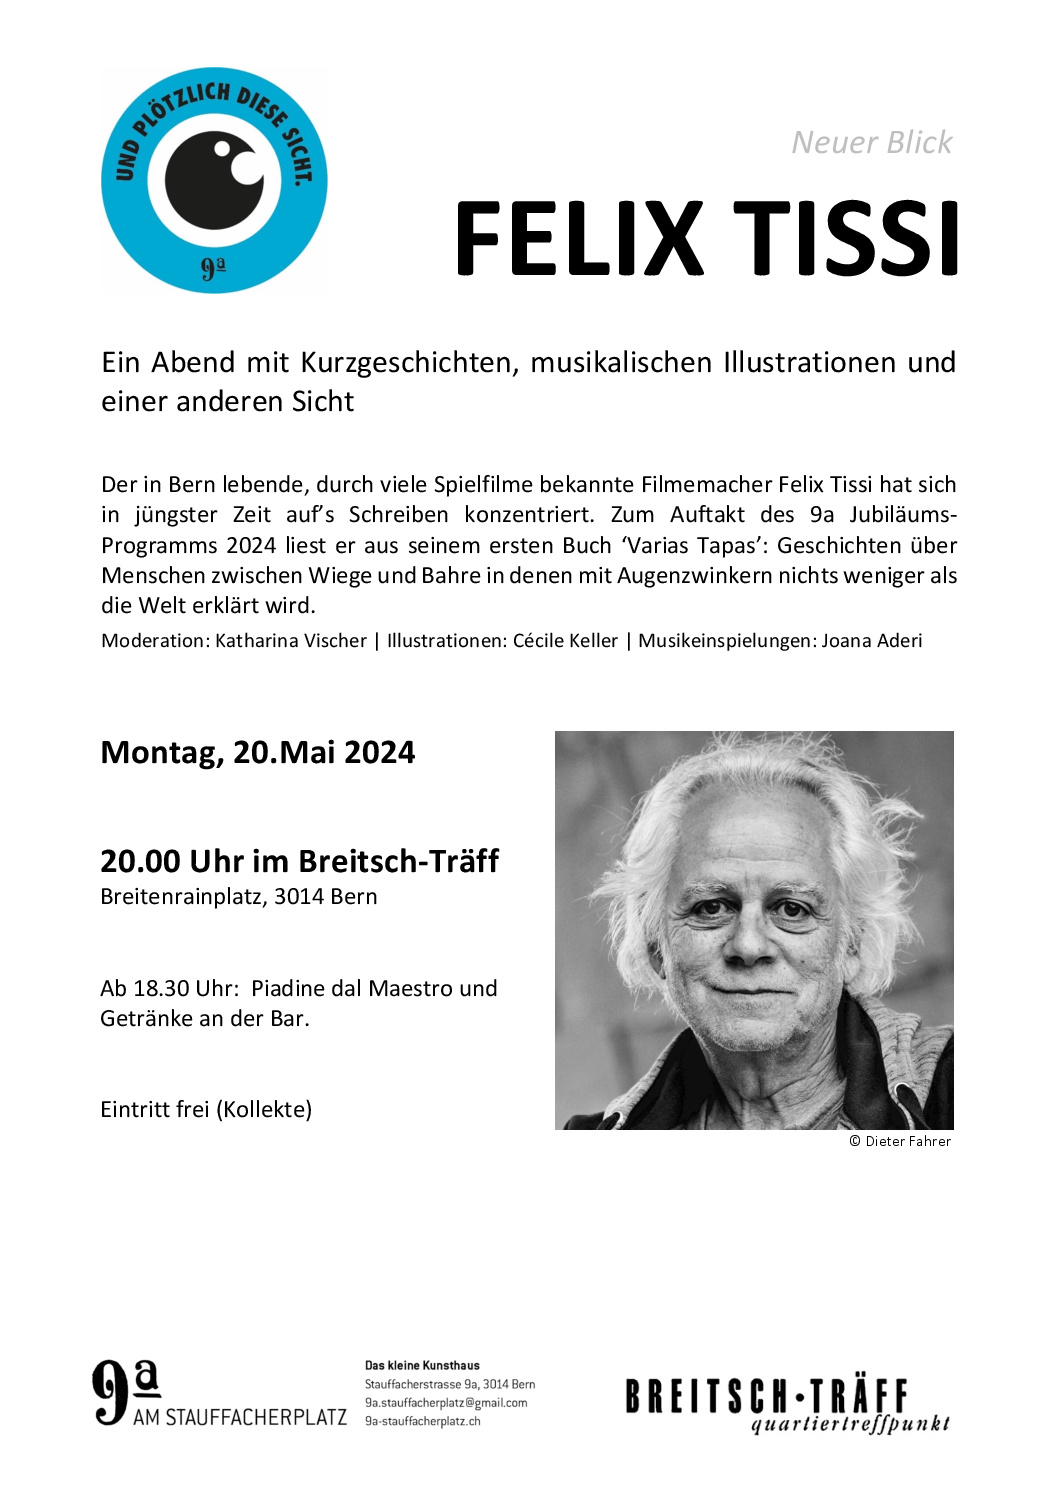 Felix Tissi - Neuer Blick